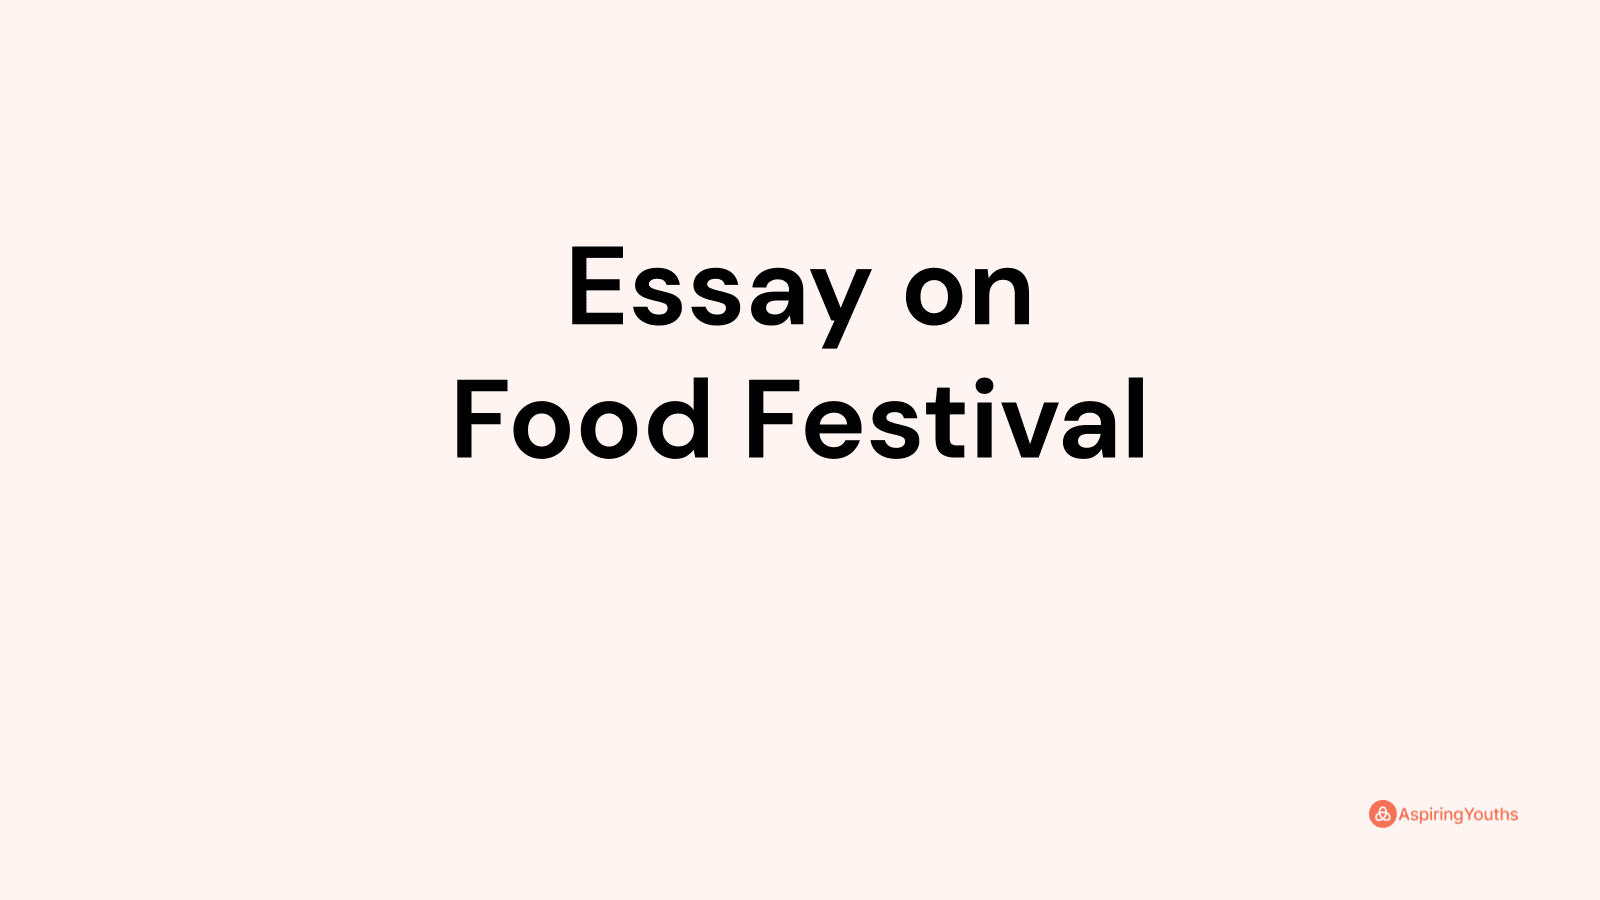 Essay on Food Festival